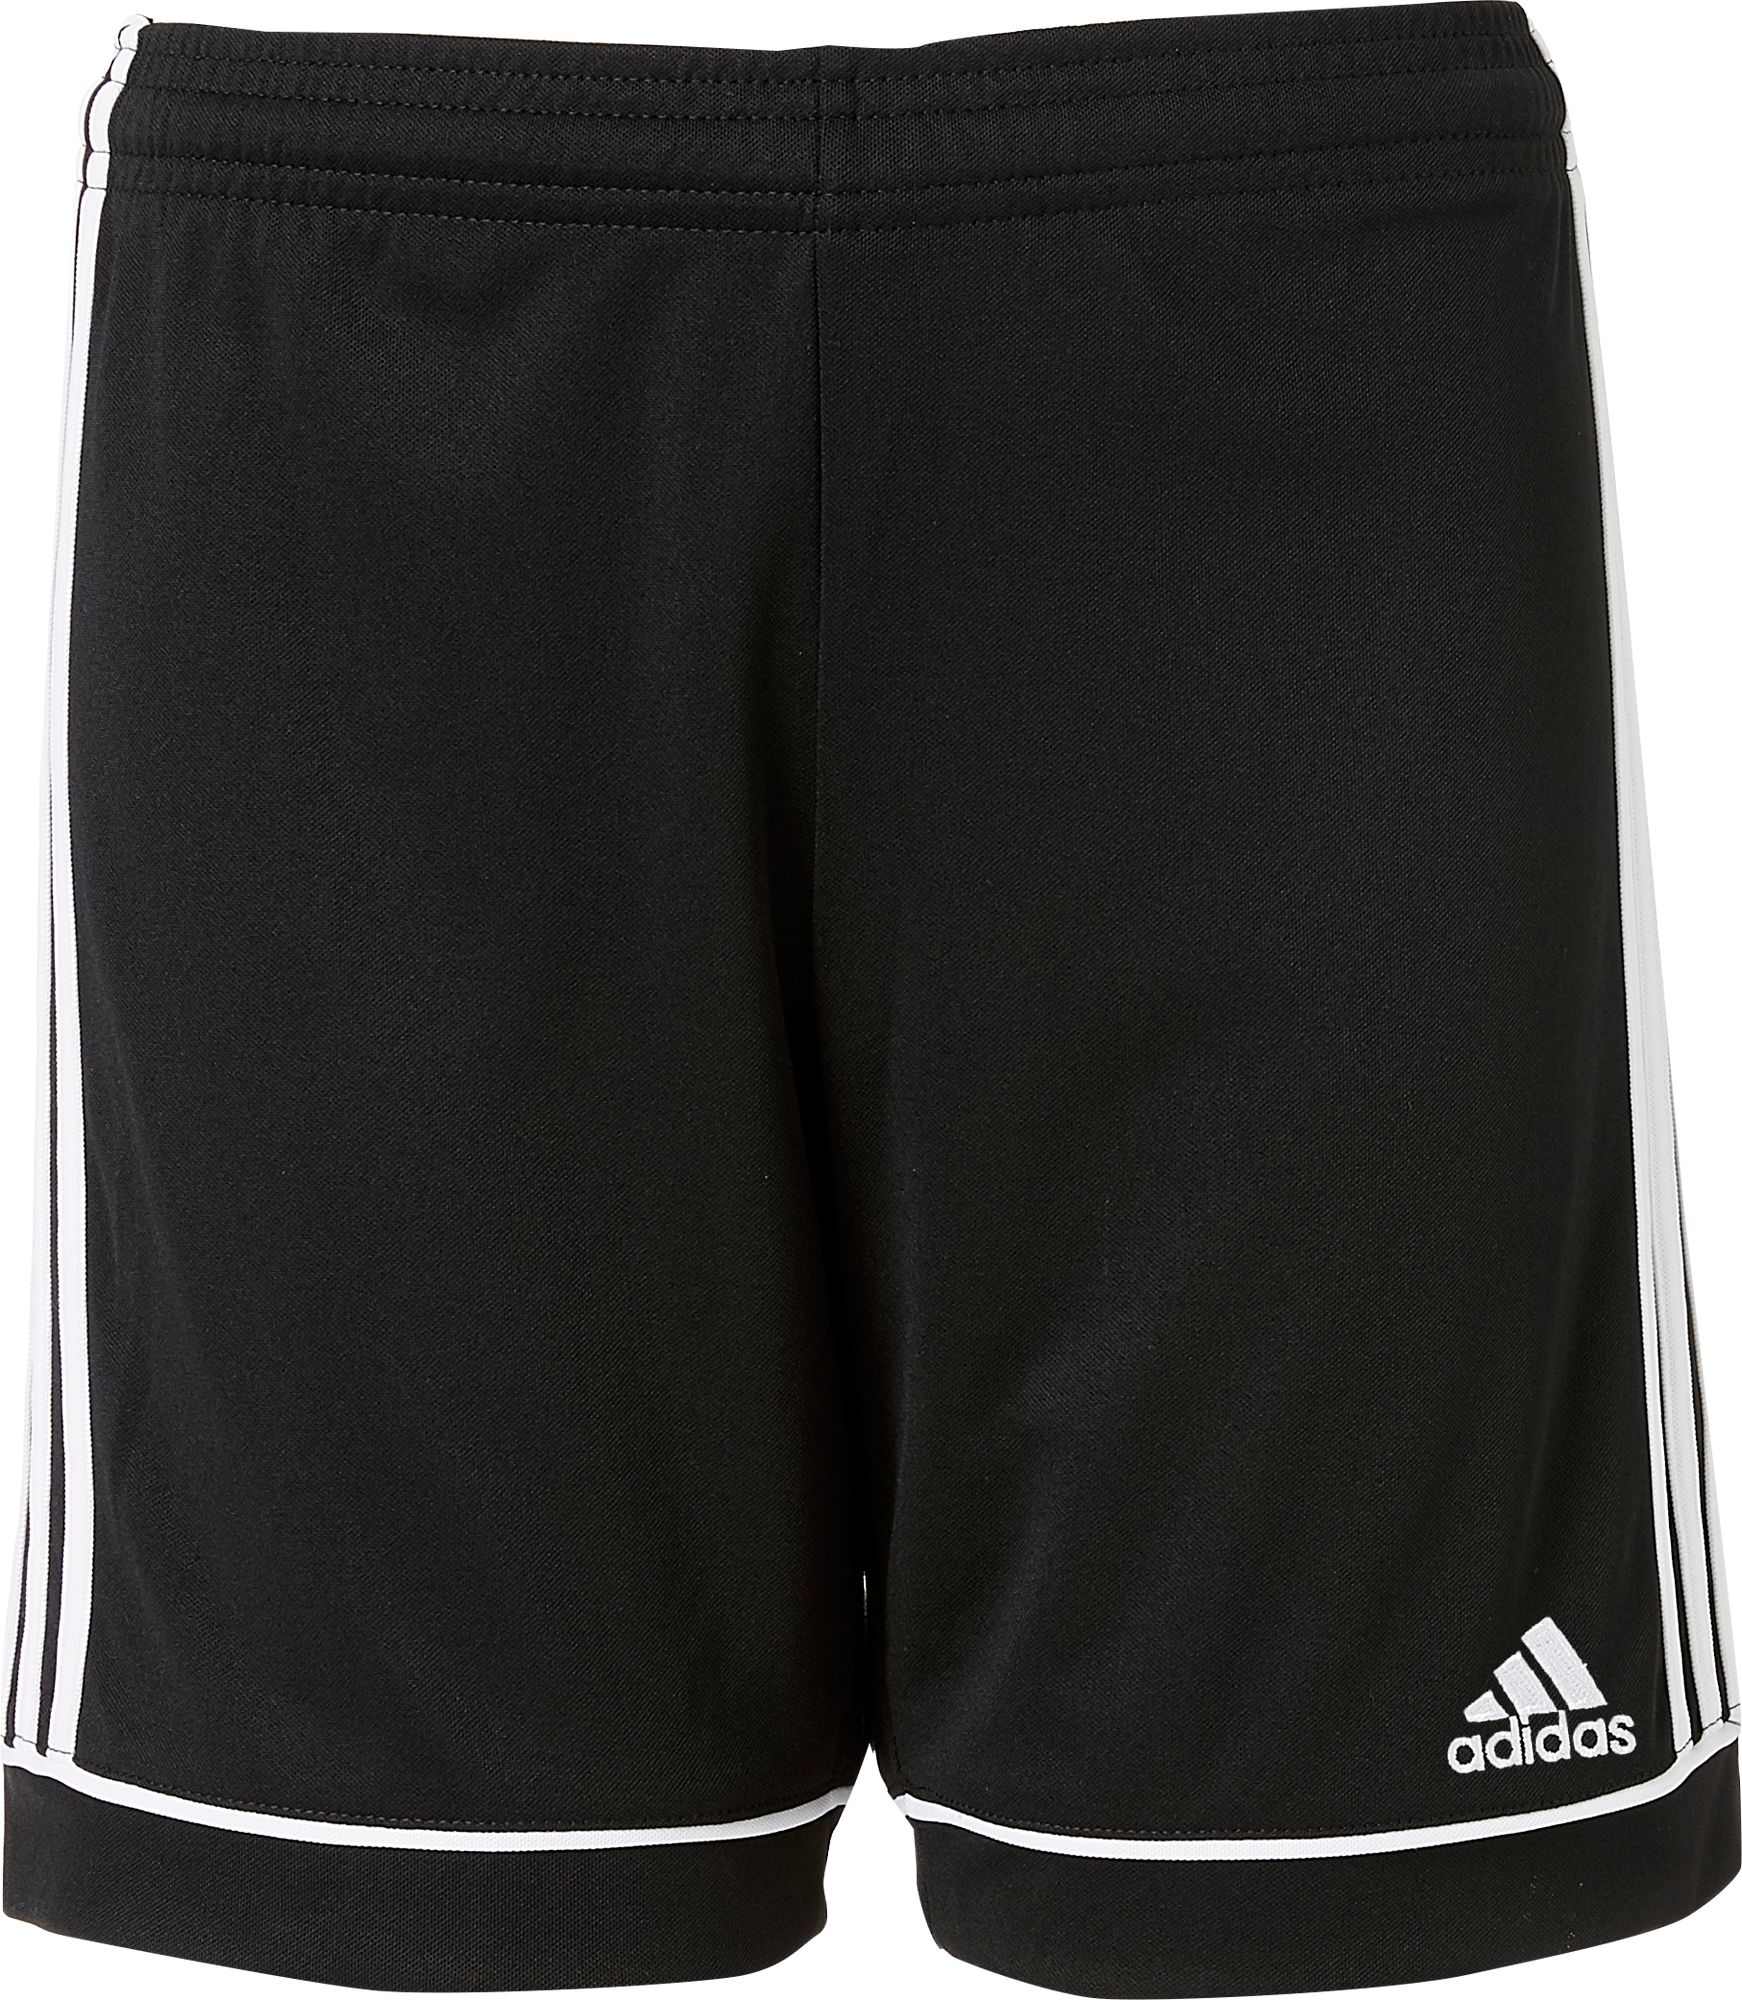 soccer shorts product image · adidas boysu0027 squadra 17 shorts HFOXYYI